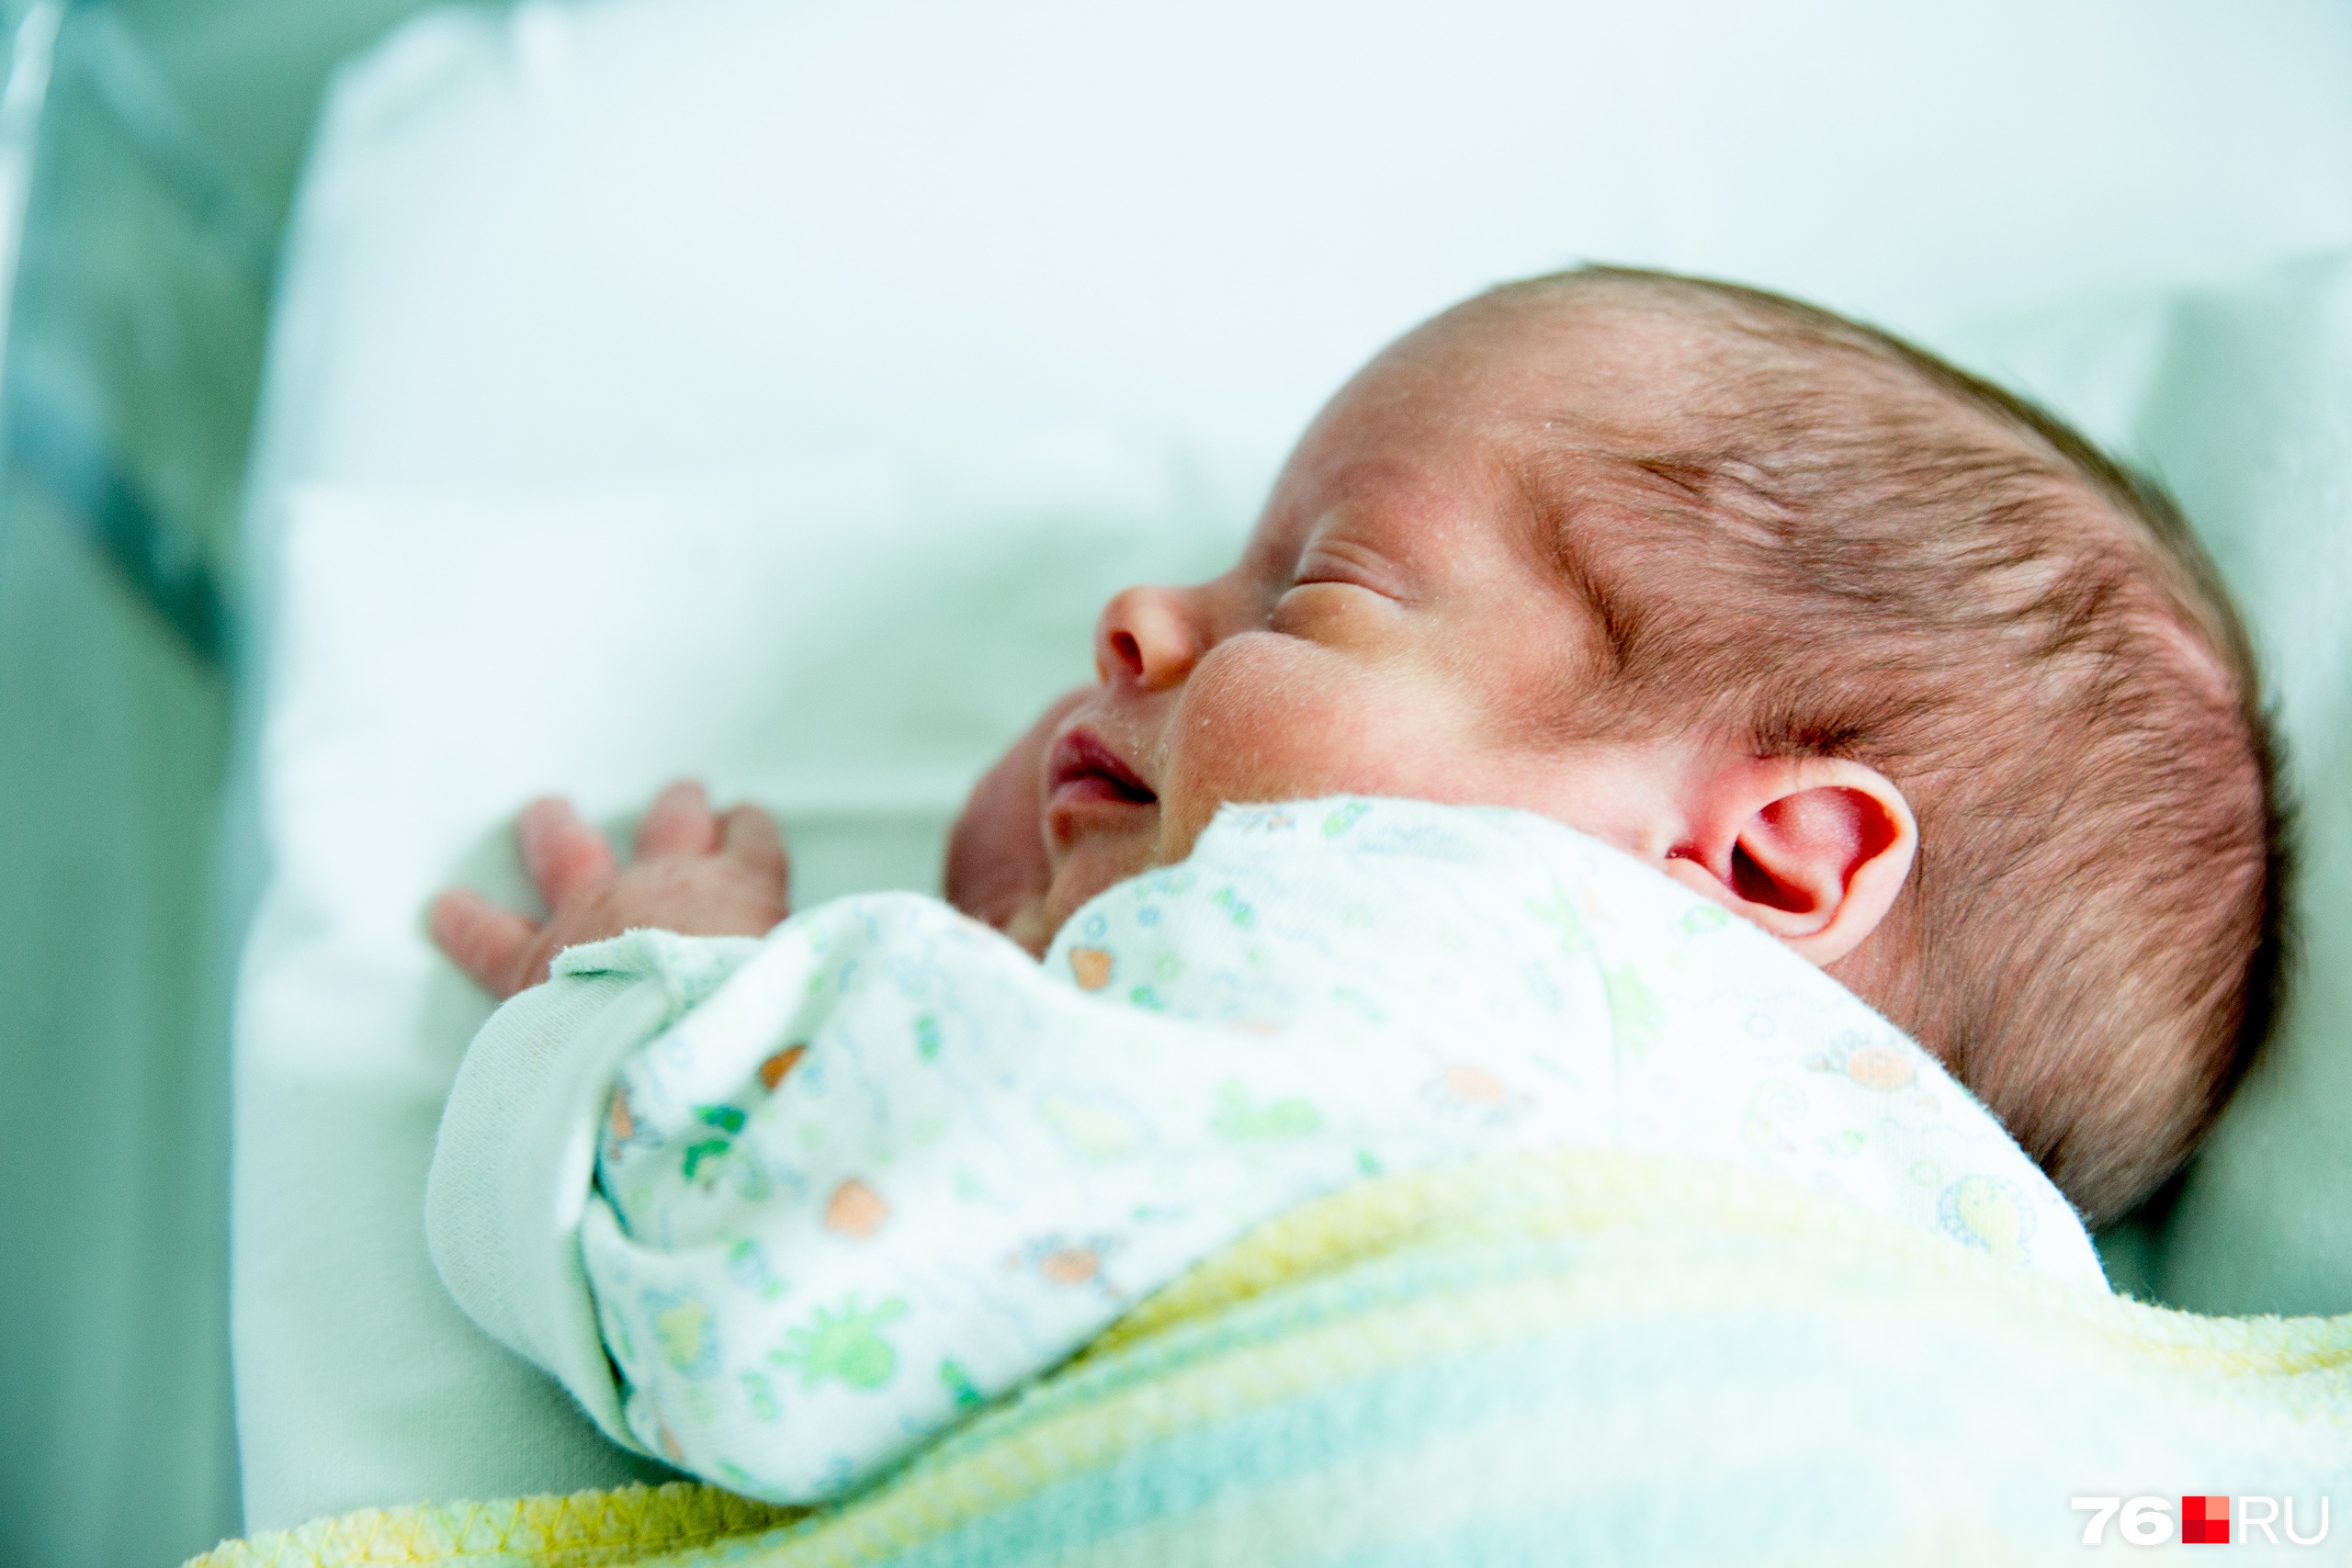 красивые фото новорожденных в роддоме